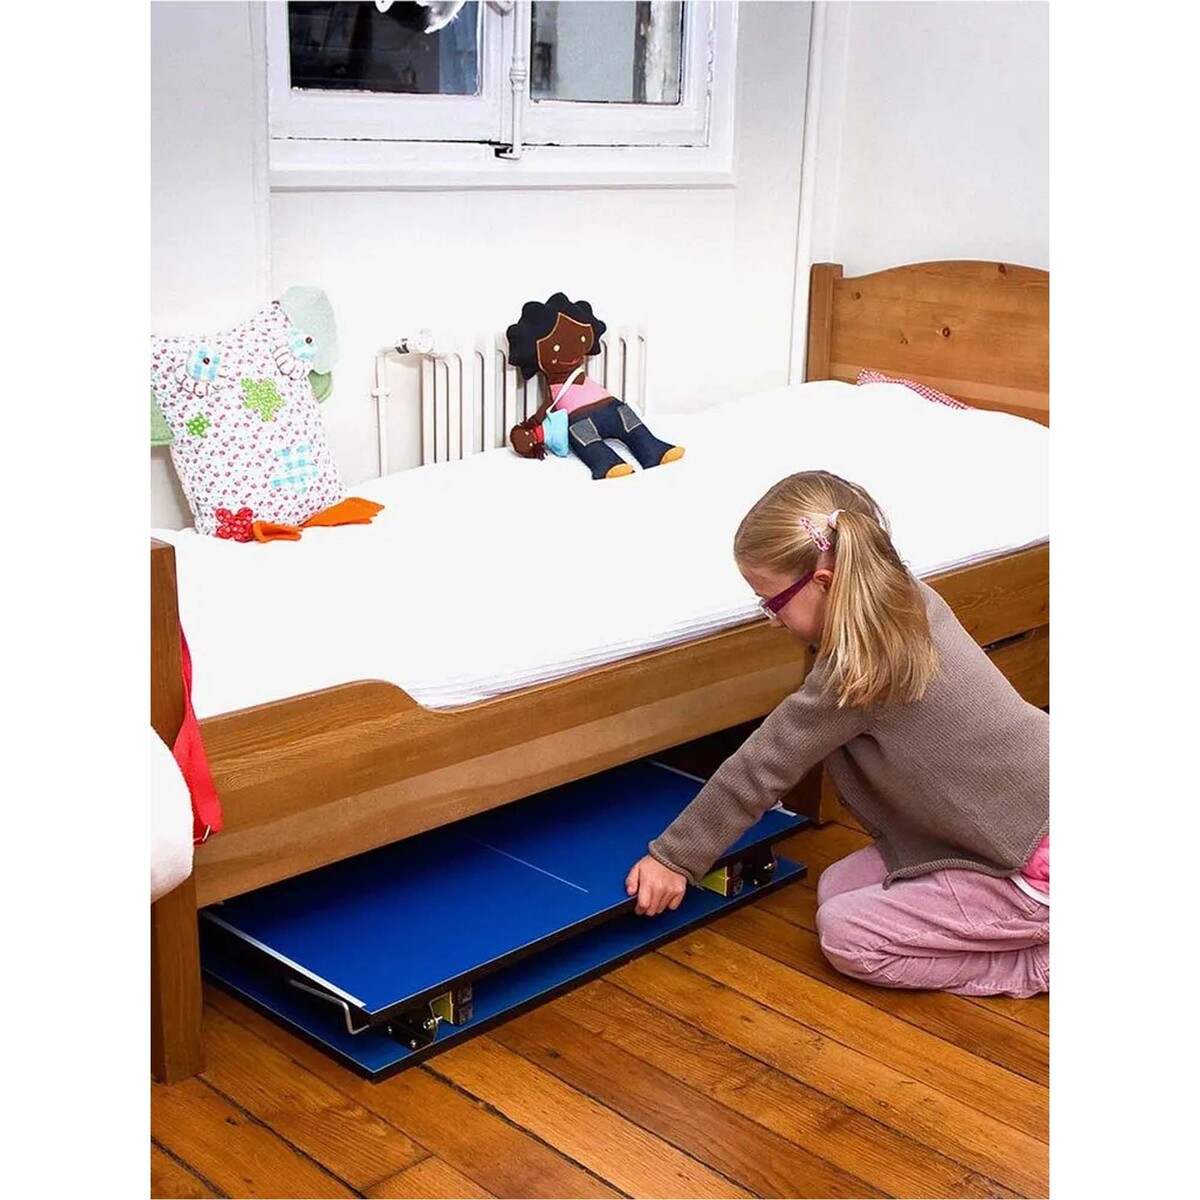 Cornilleau Hobby Mini Table Tennis Table, Blue, 16006